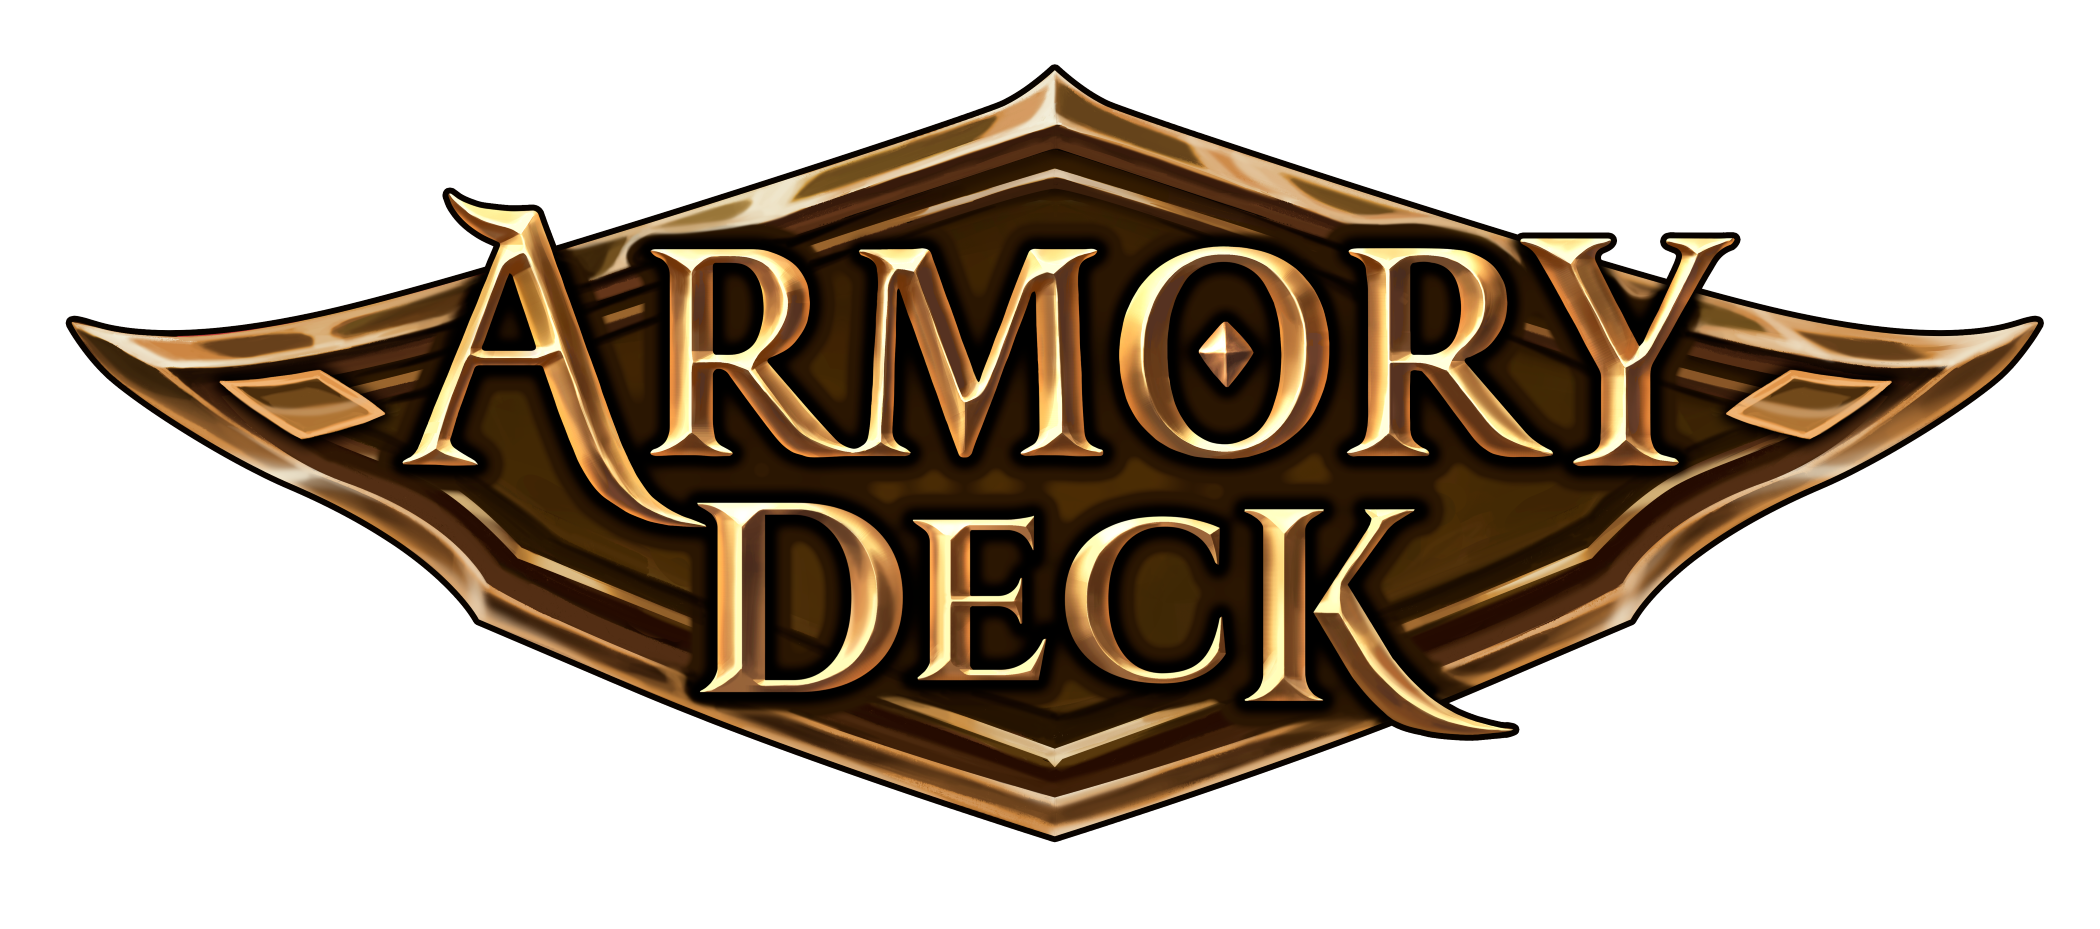 FaB Armory Deck Logo